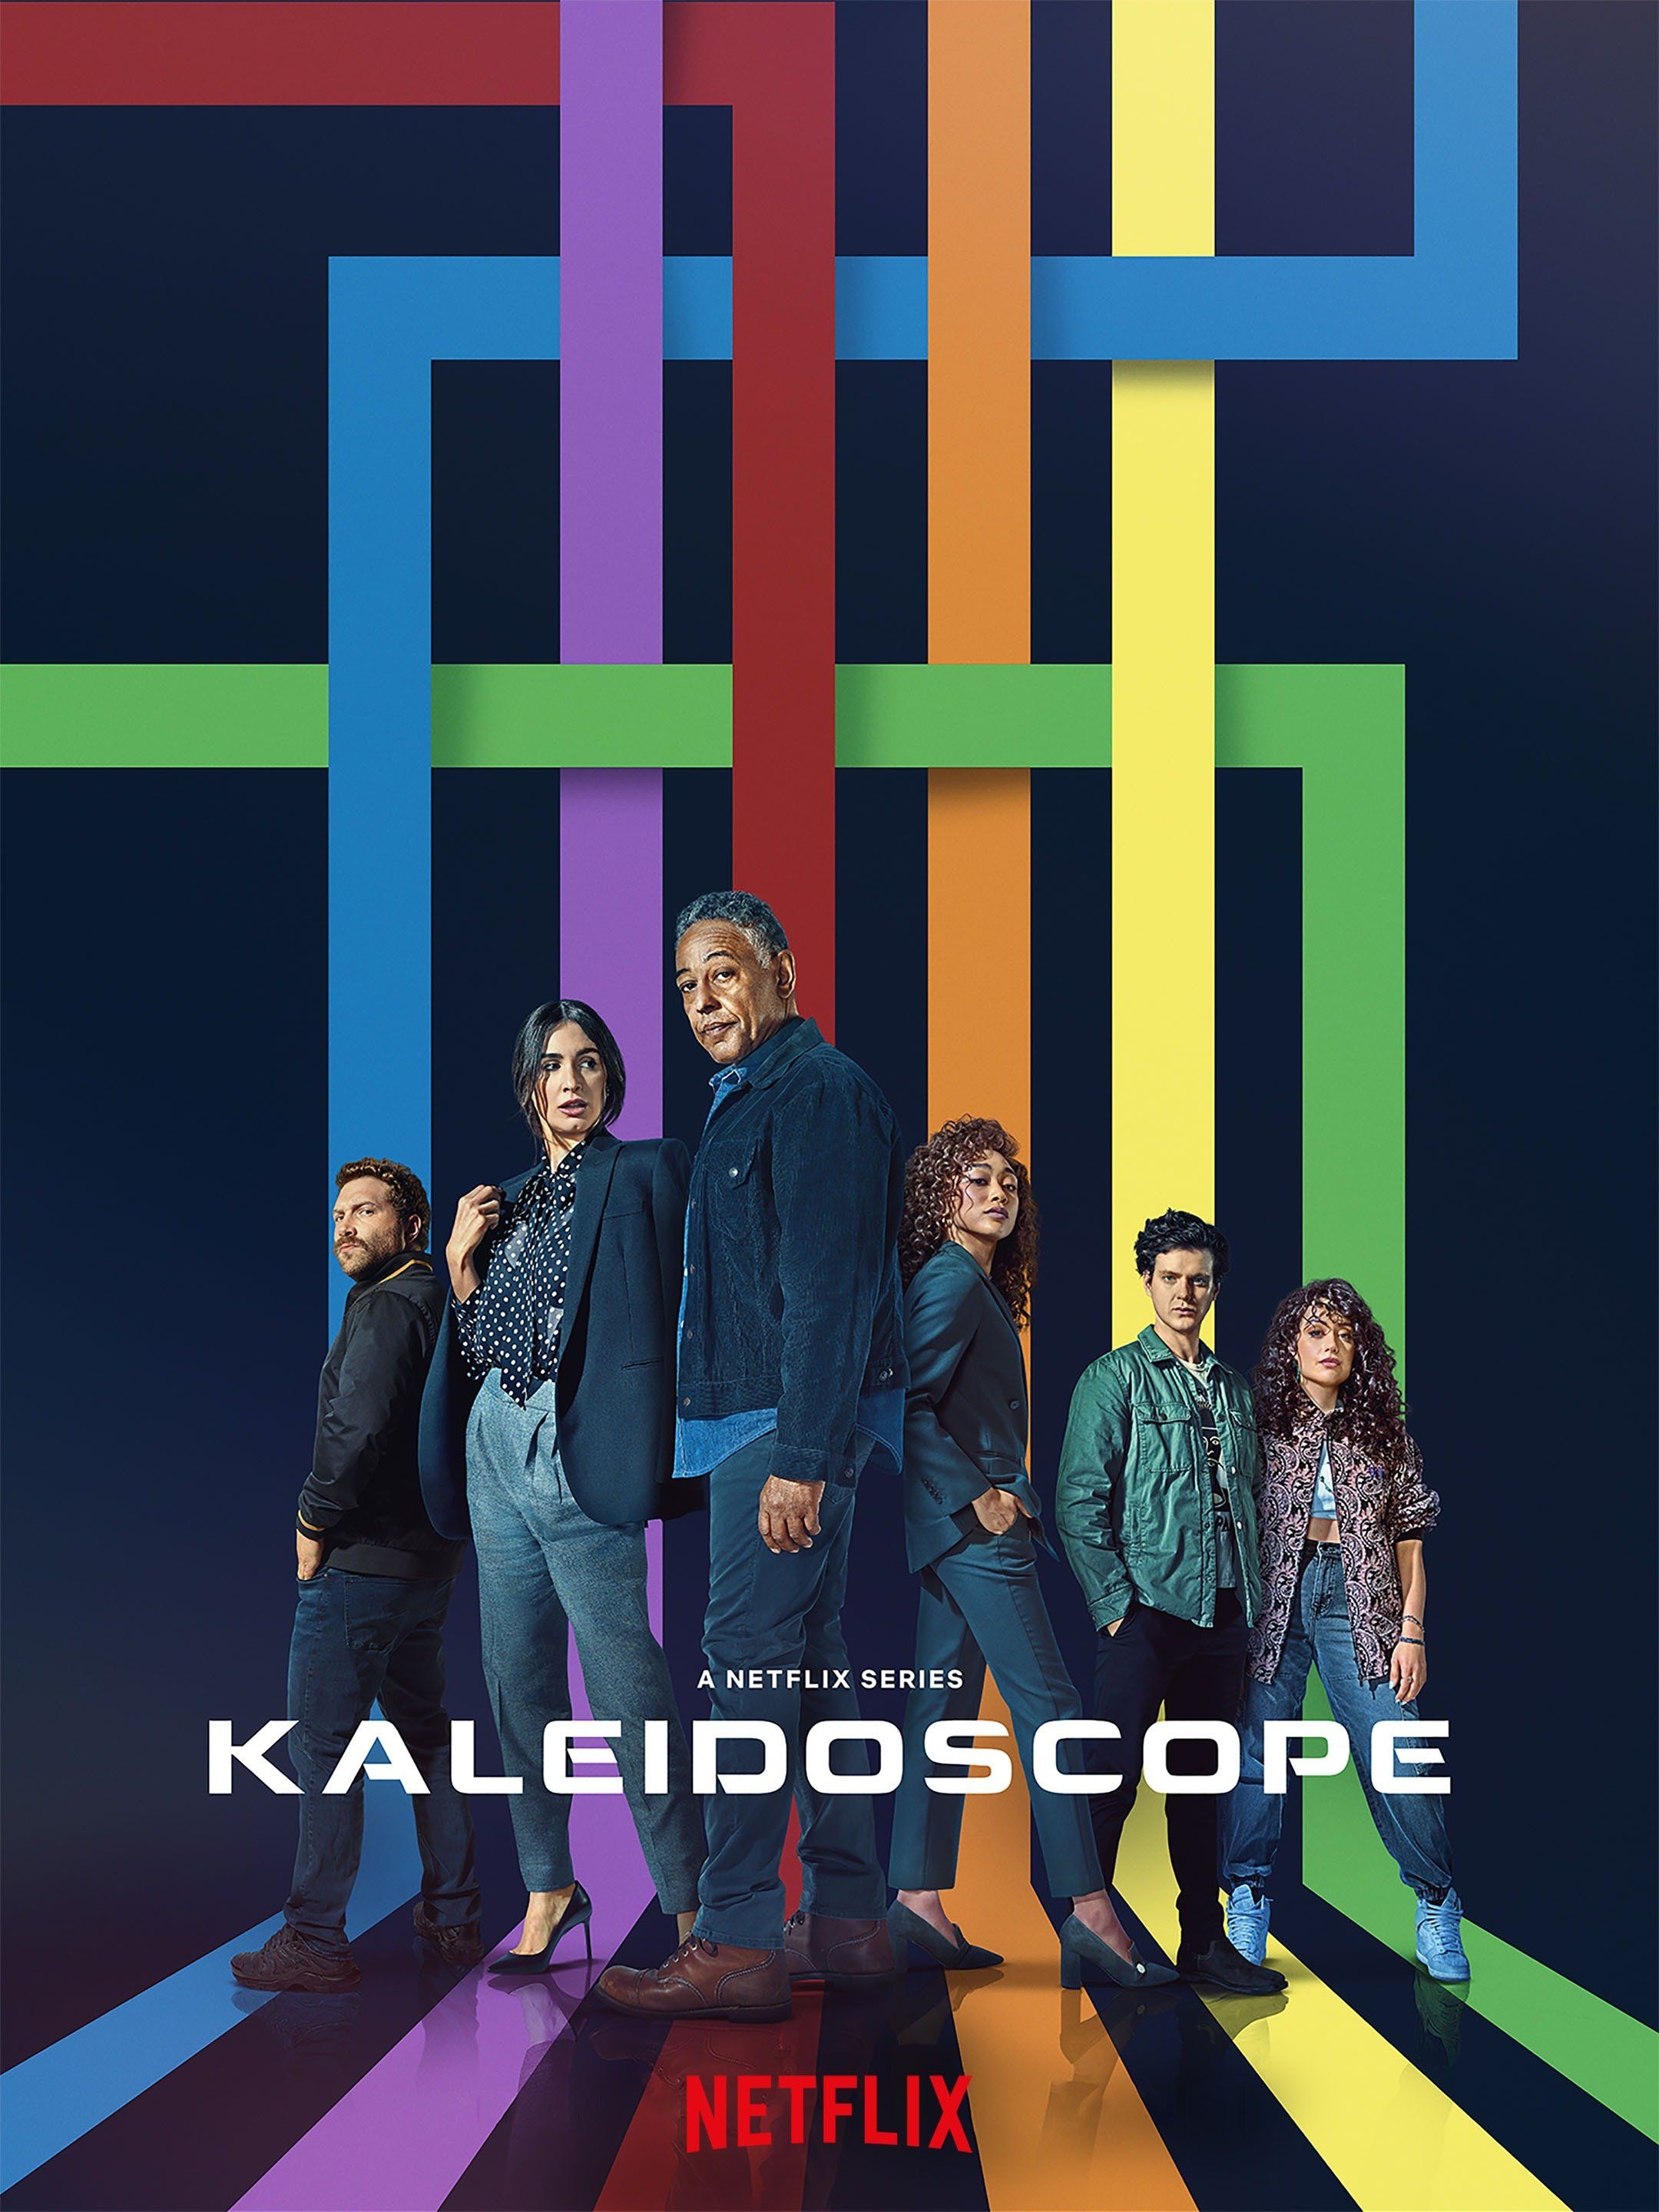 Kaleidoscope, Netflix